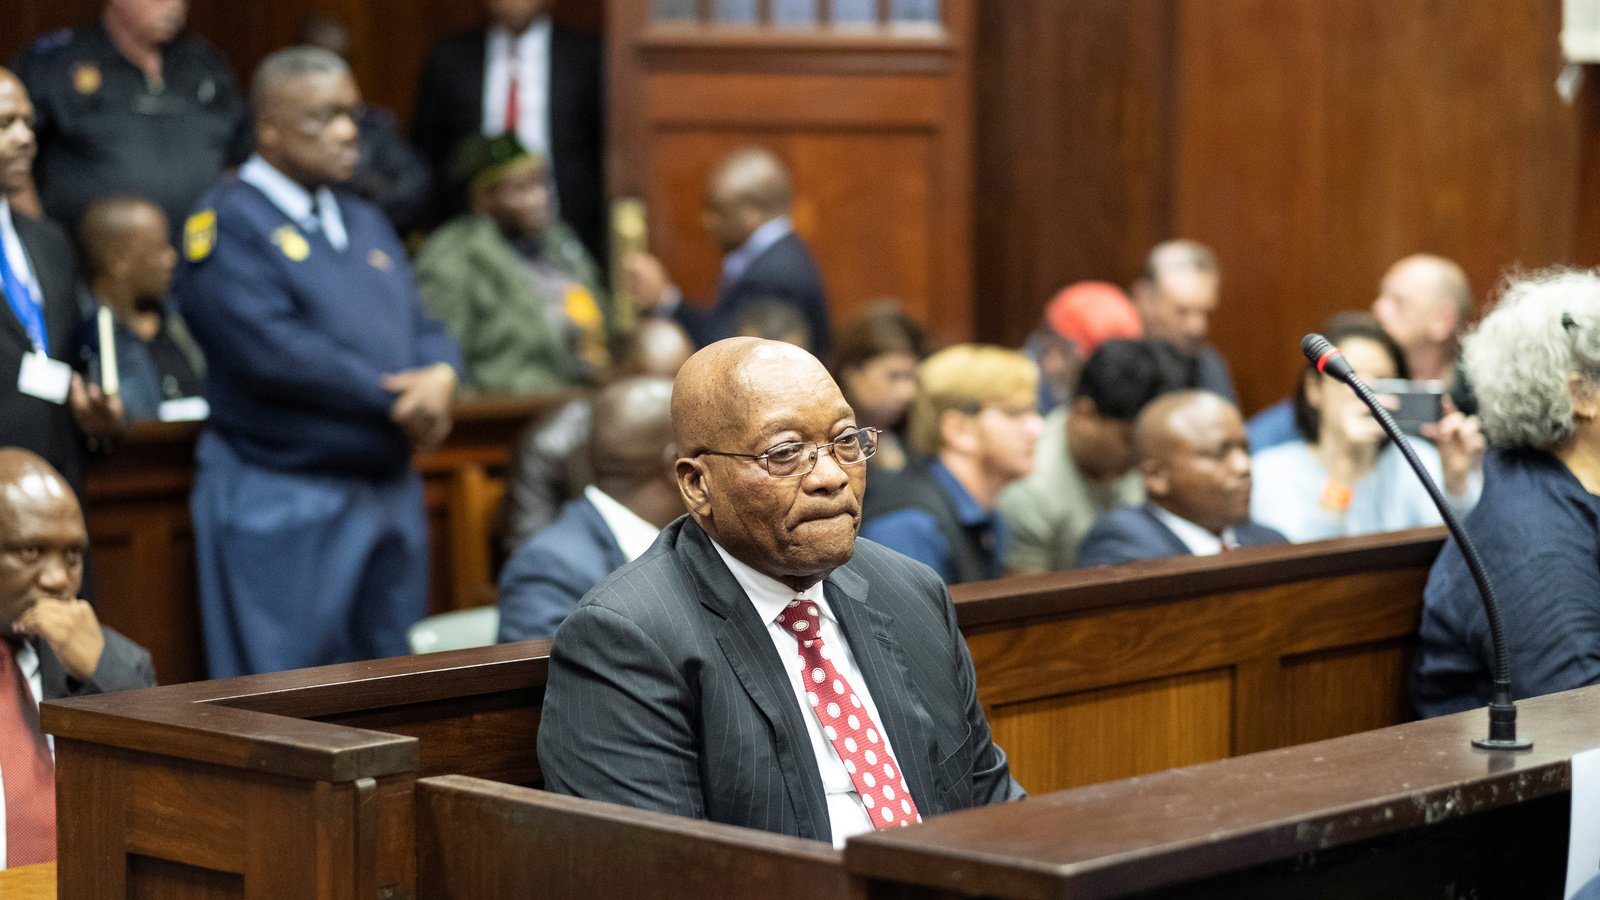 Jacob Zuma in court. PHOTO/COURTESY